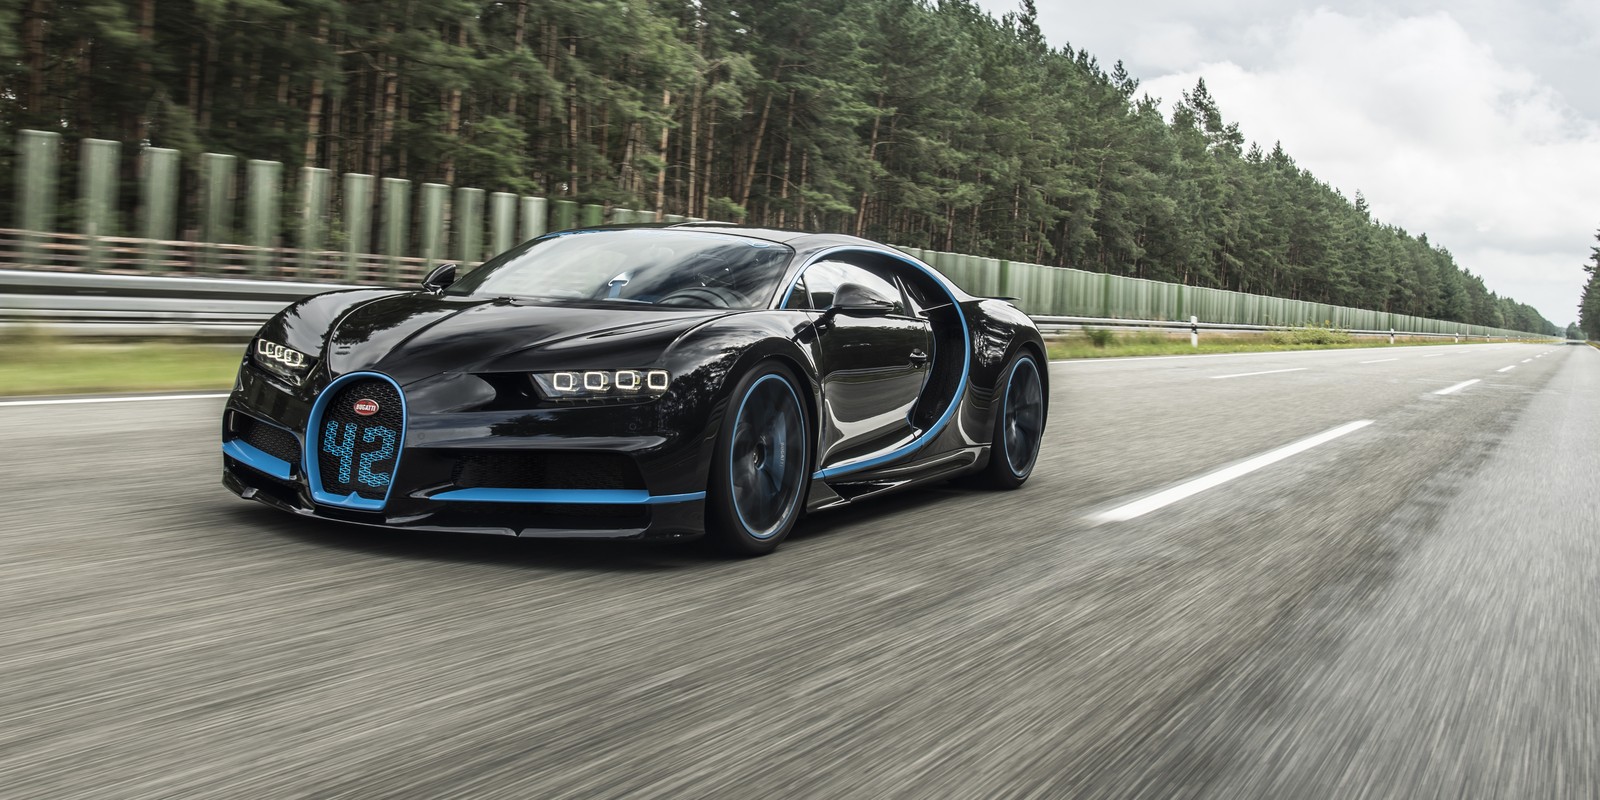 Sabe por que o Bugatti Chiron veio com este número 42 estampado? É o tempo que ele leva para acelerar de 0 a 400 km/h e frear completamente! (Foto: Divulgação)